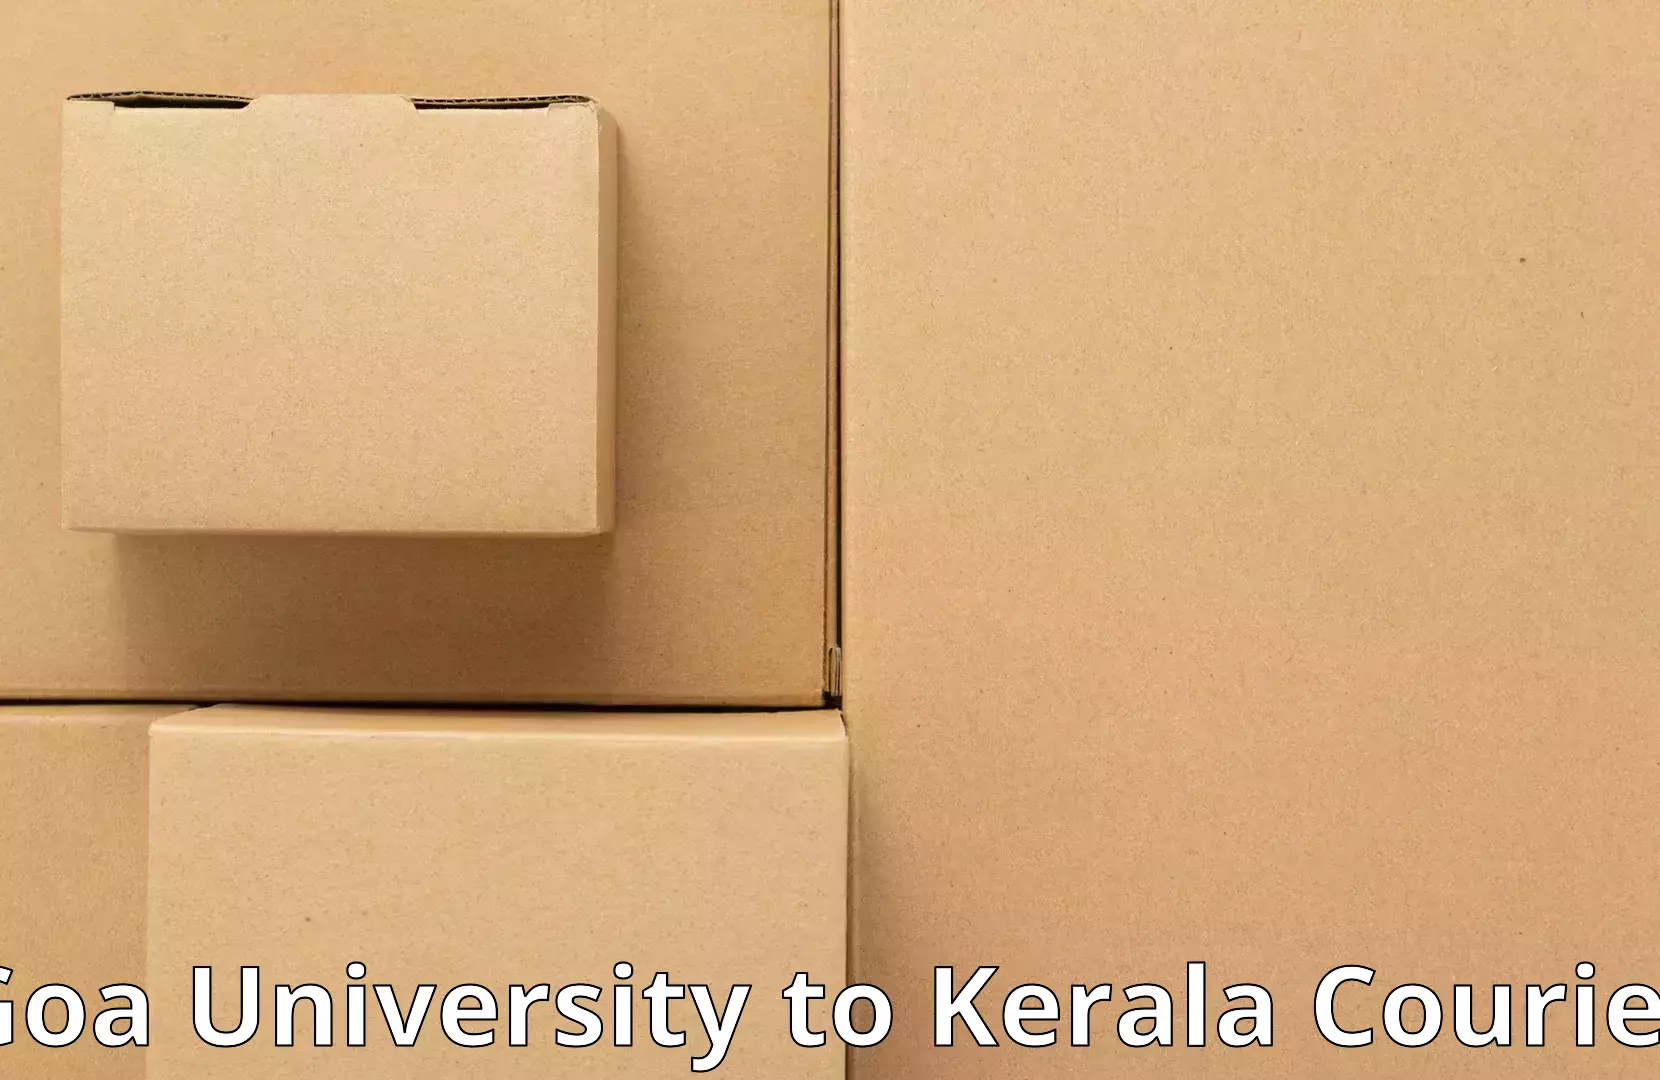 Furniture moving experts Goa University to Mundakayam